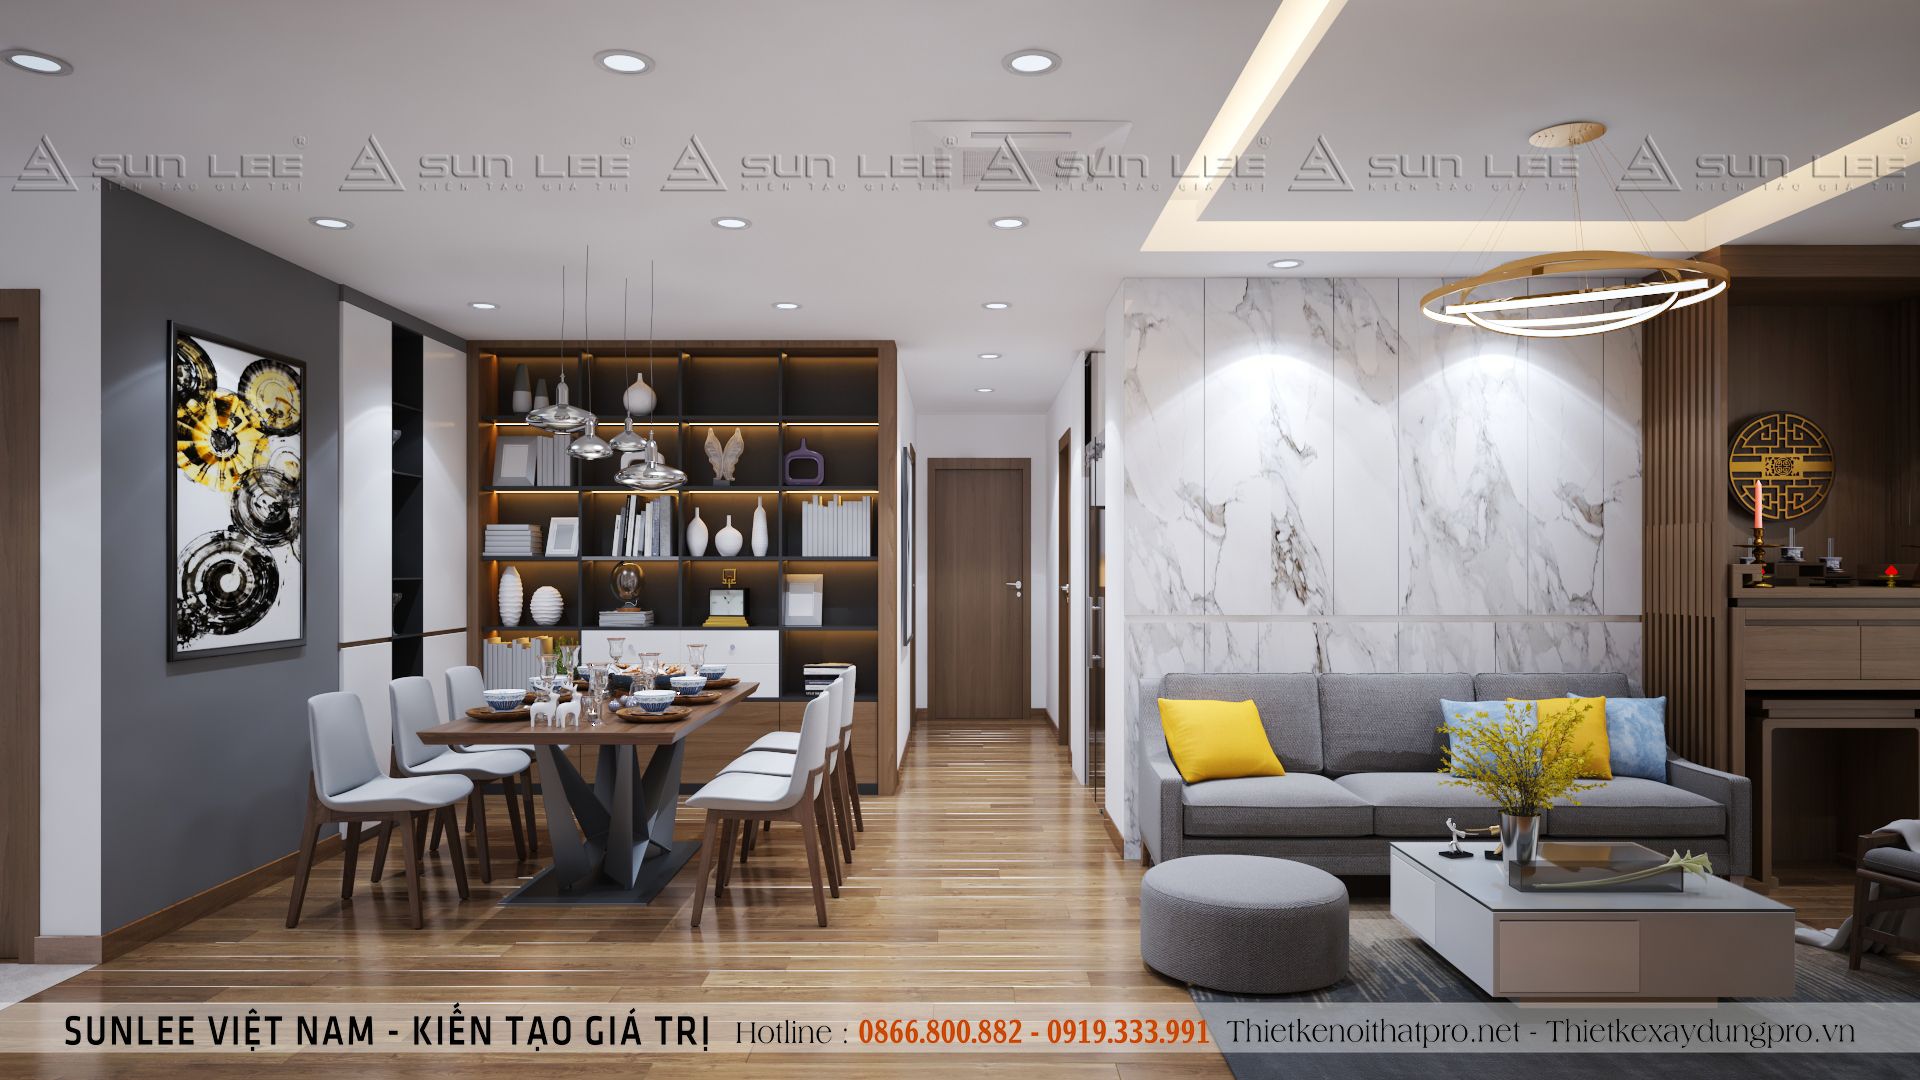 Thiết kế nội thất chung cư cao cấp tại Hà Nội